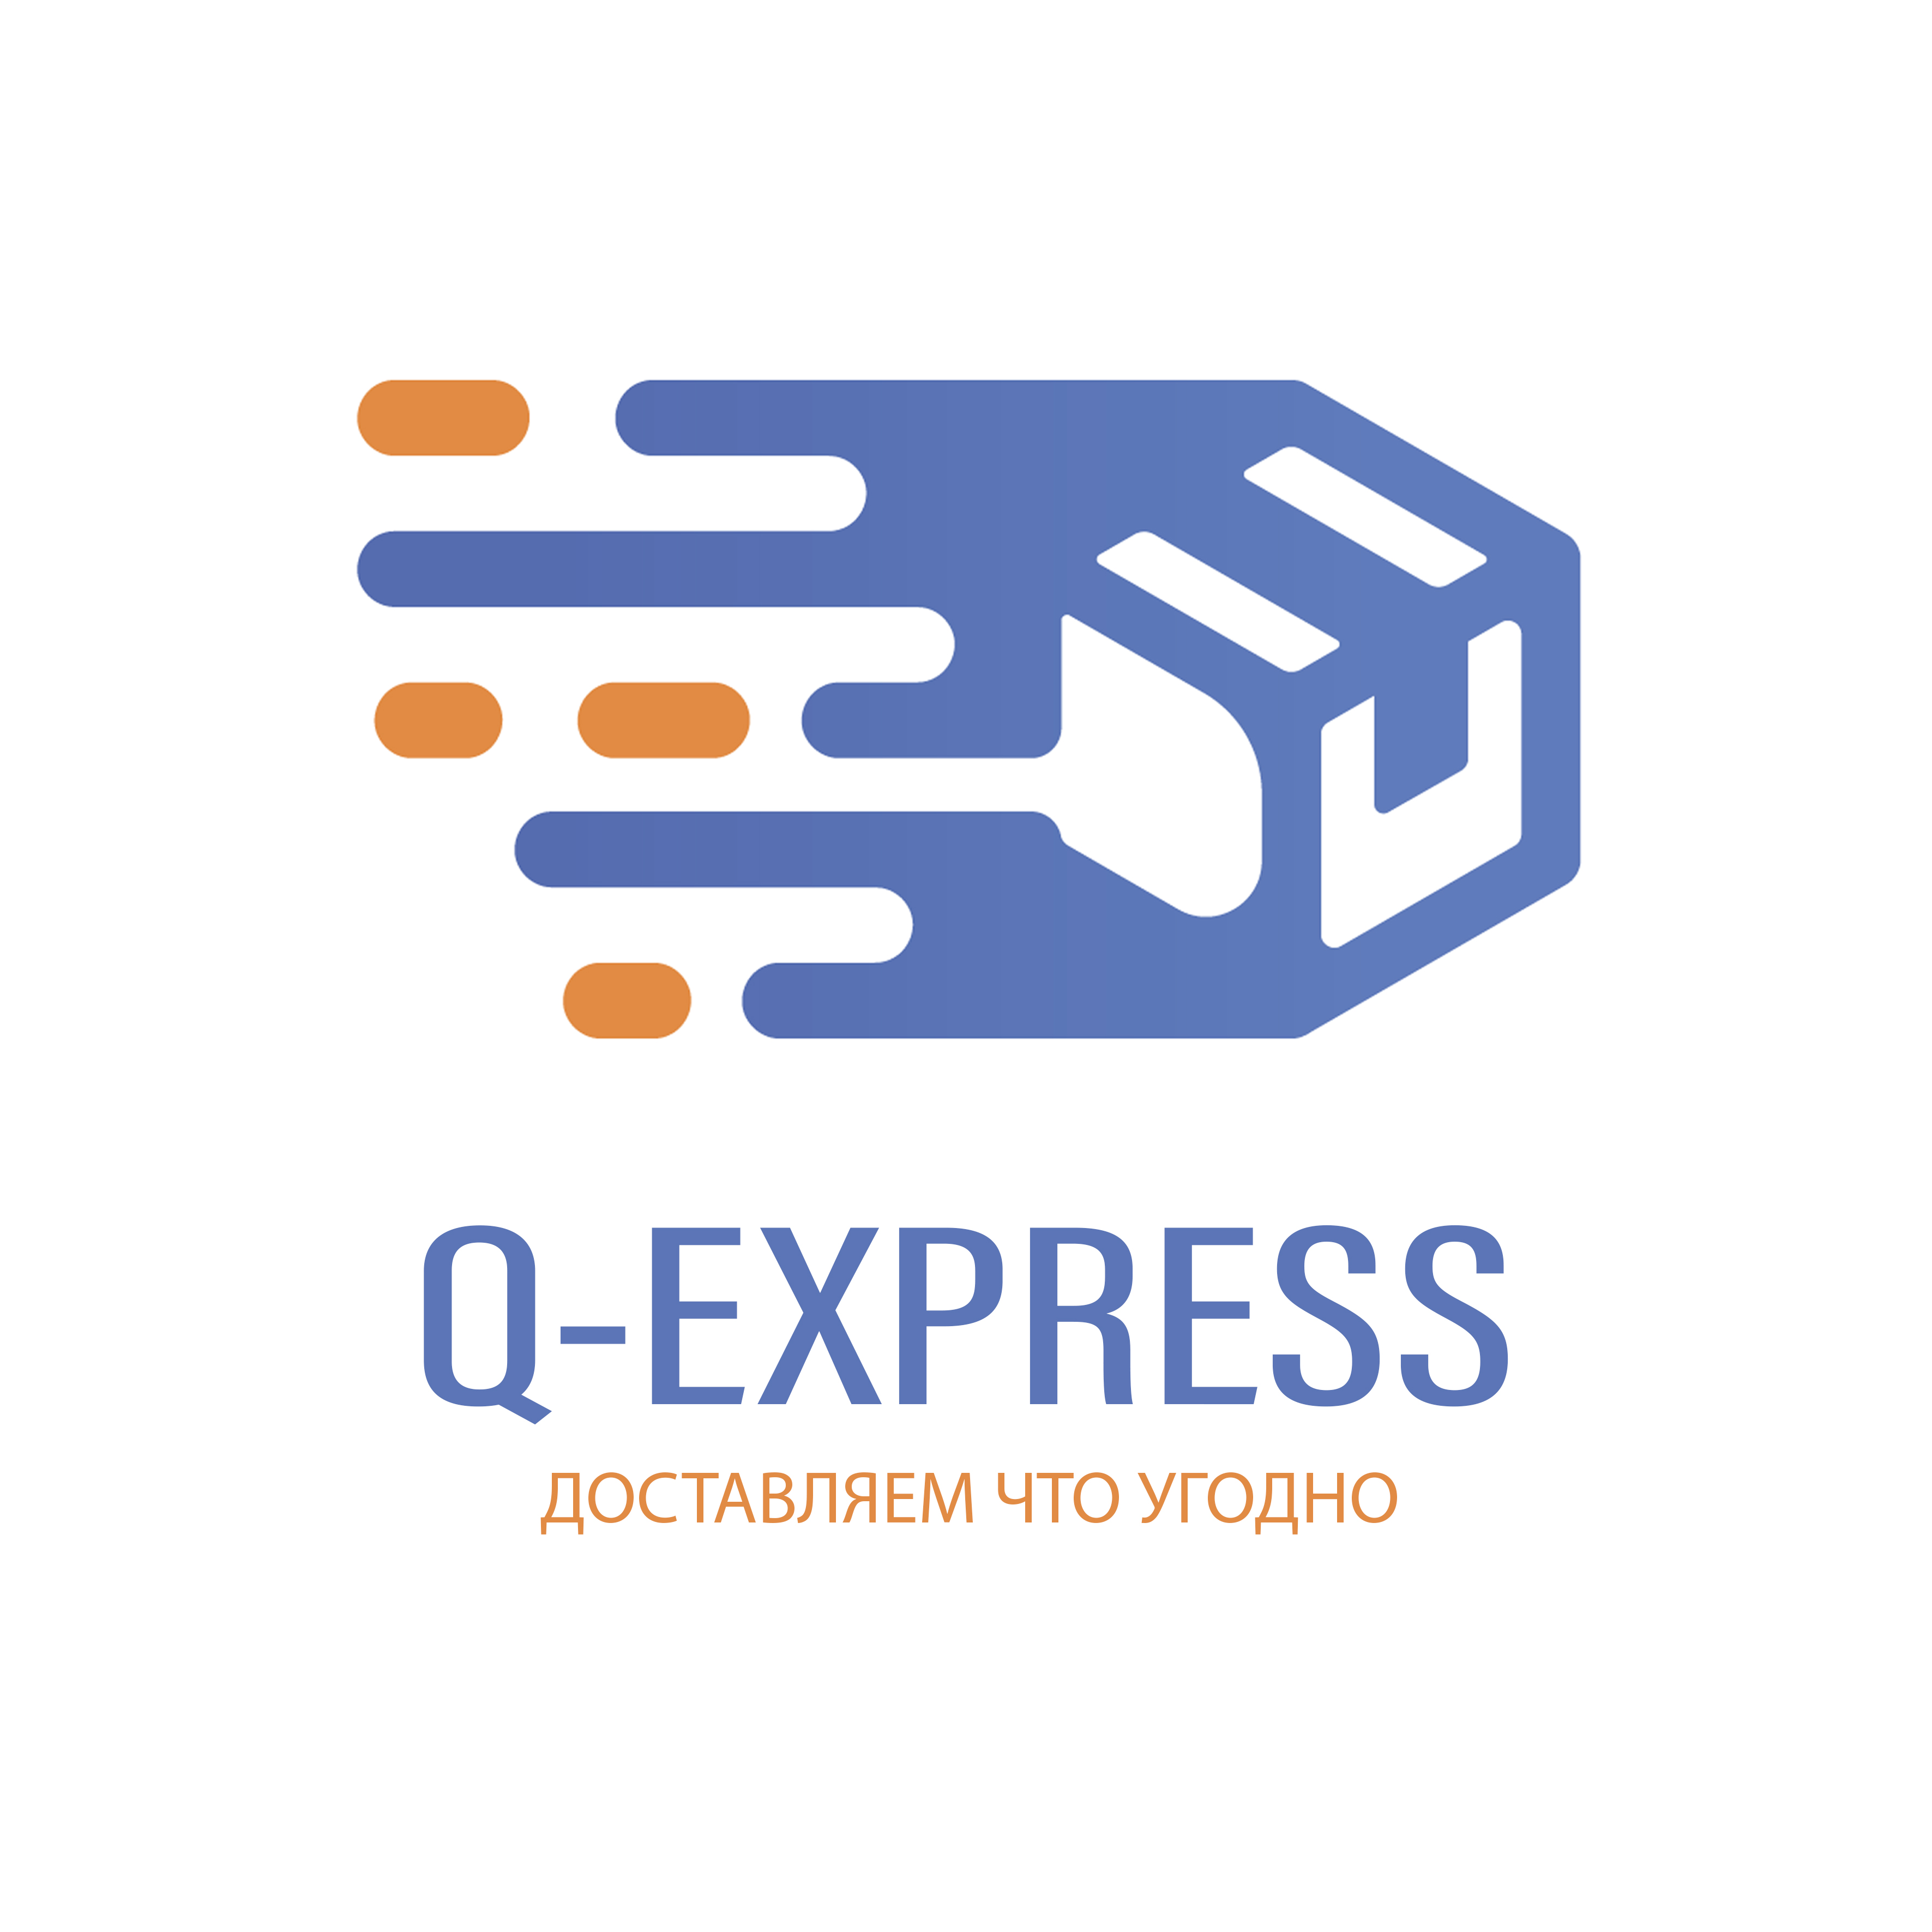 Q-express